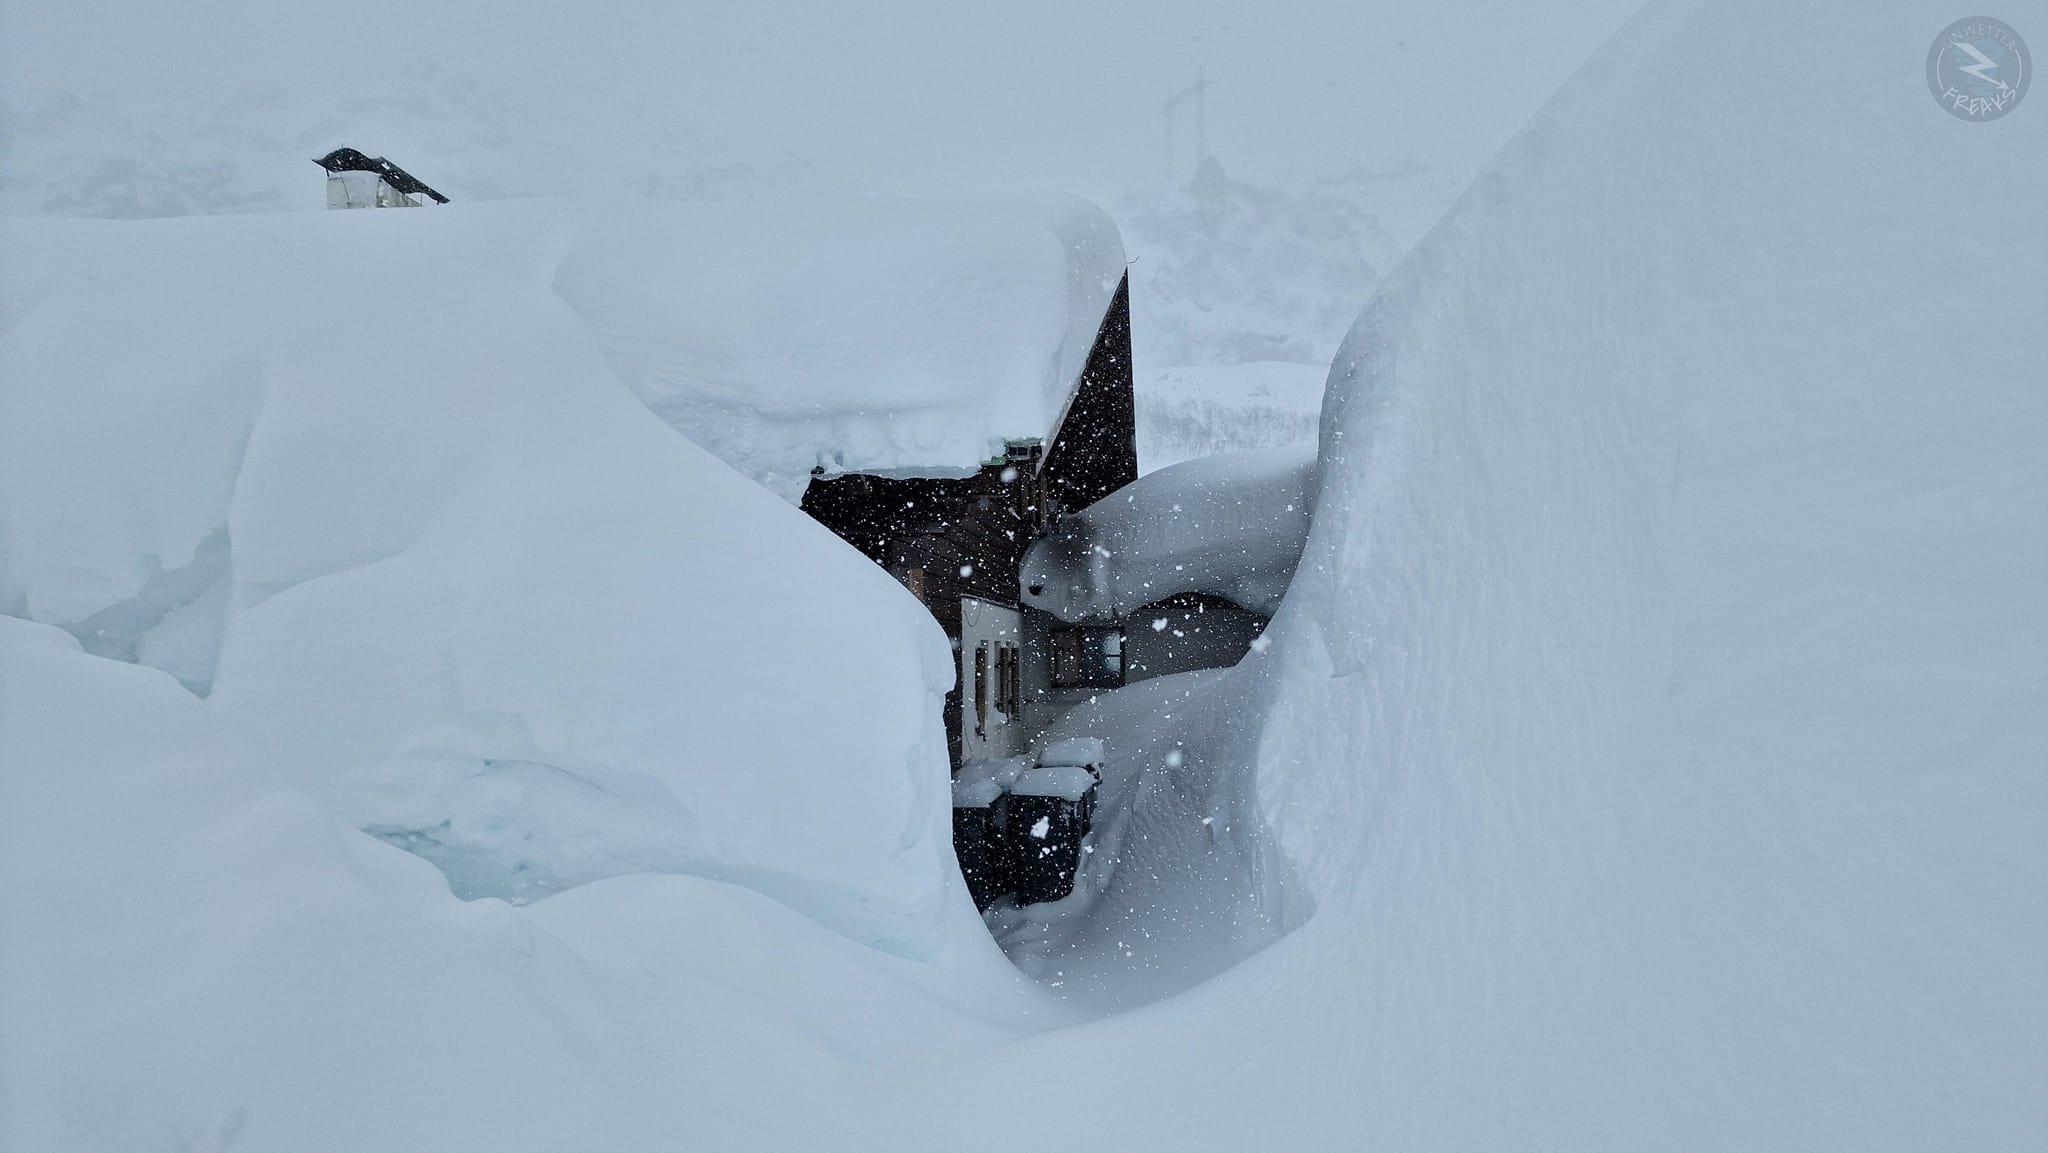 Az Arlberg régióban már az egy héttel ezelőtti havazás után is hatalmas hó volt - Fotó: Unwetterfreaks